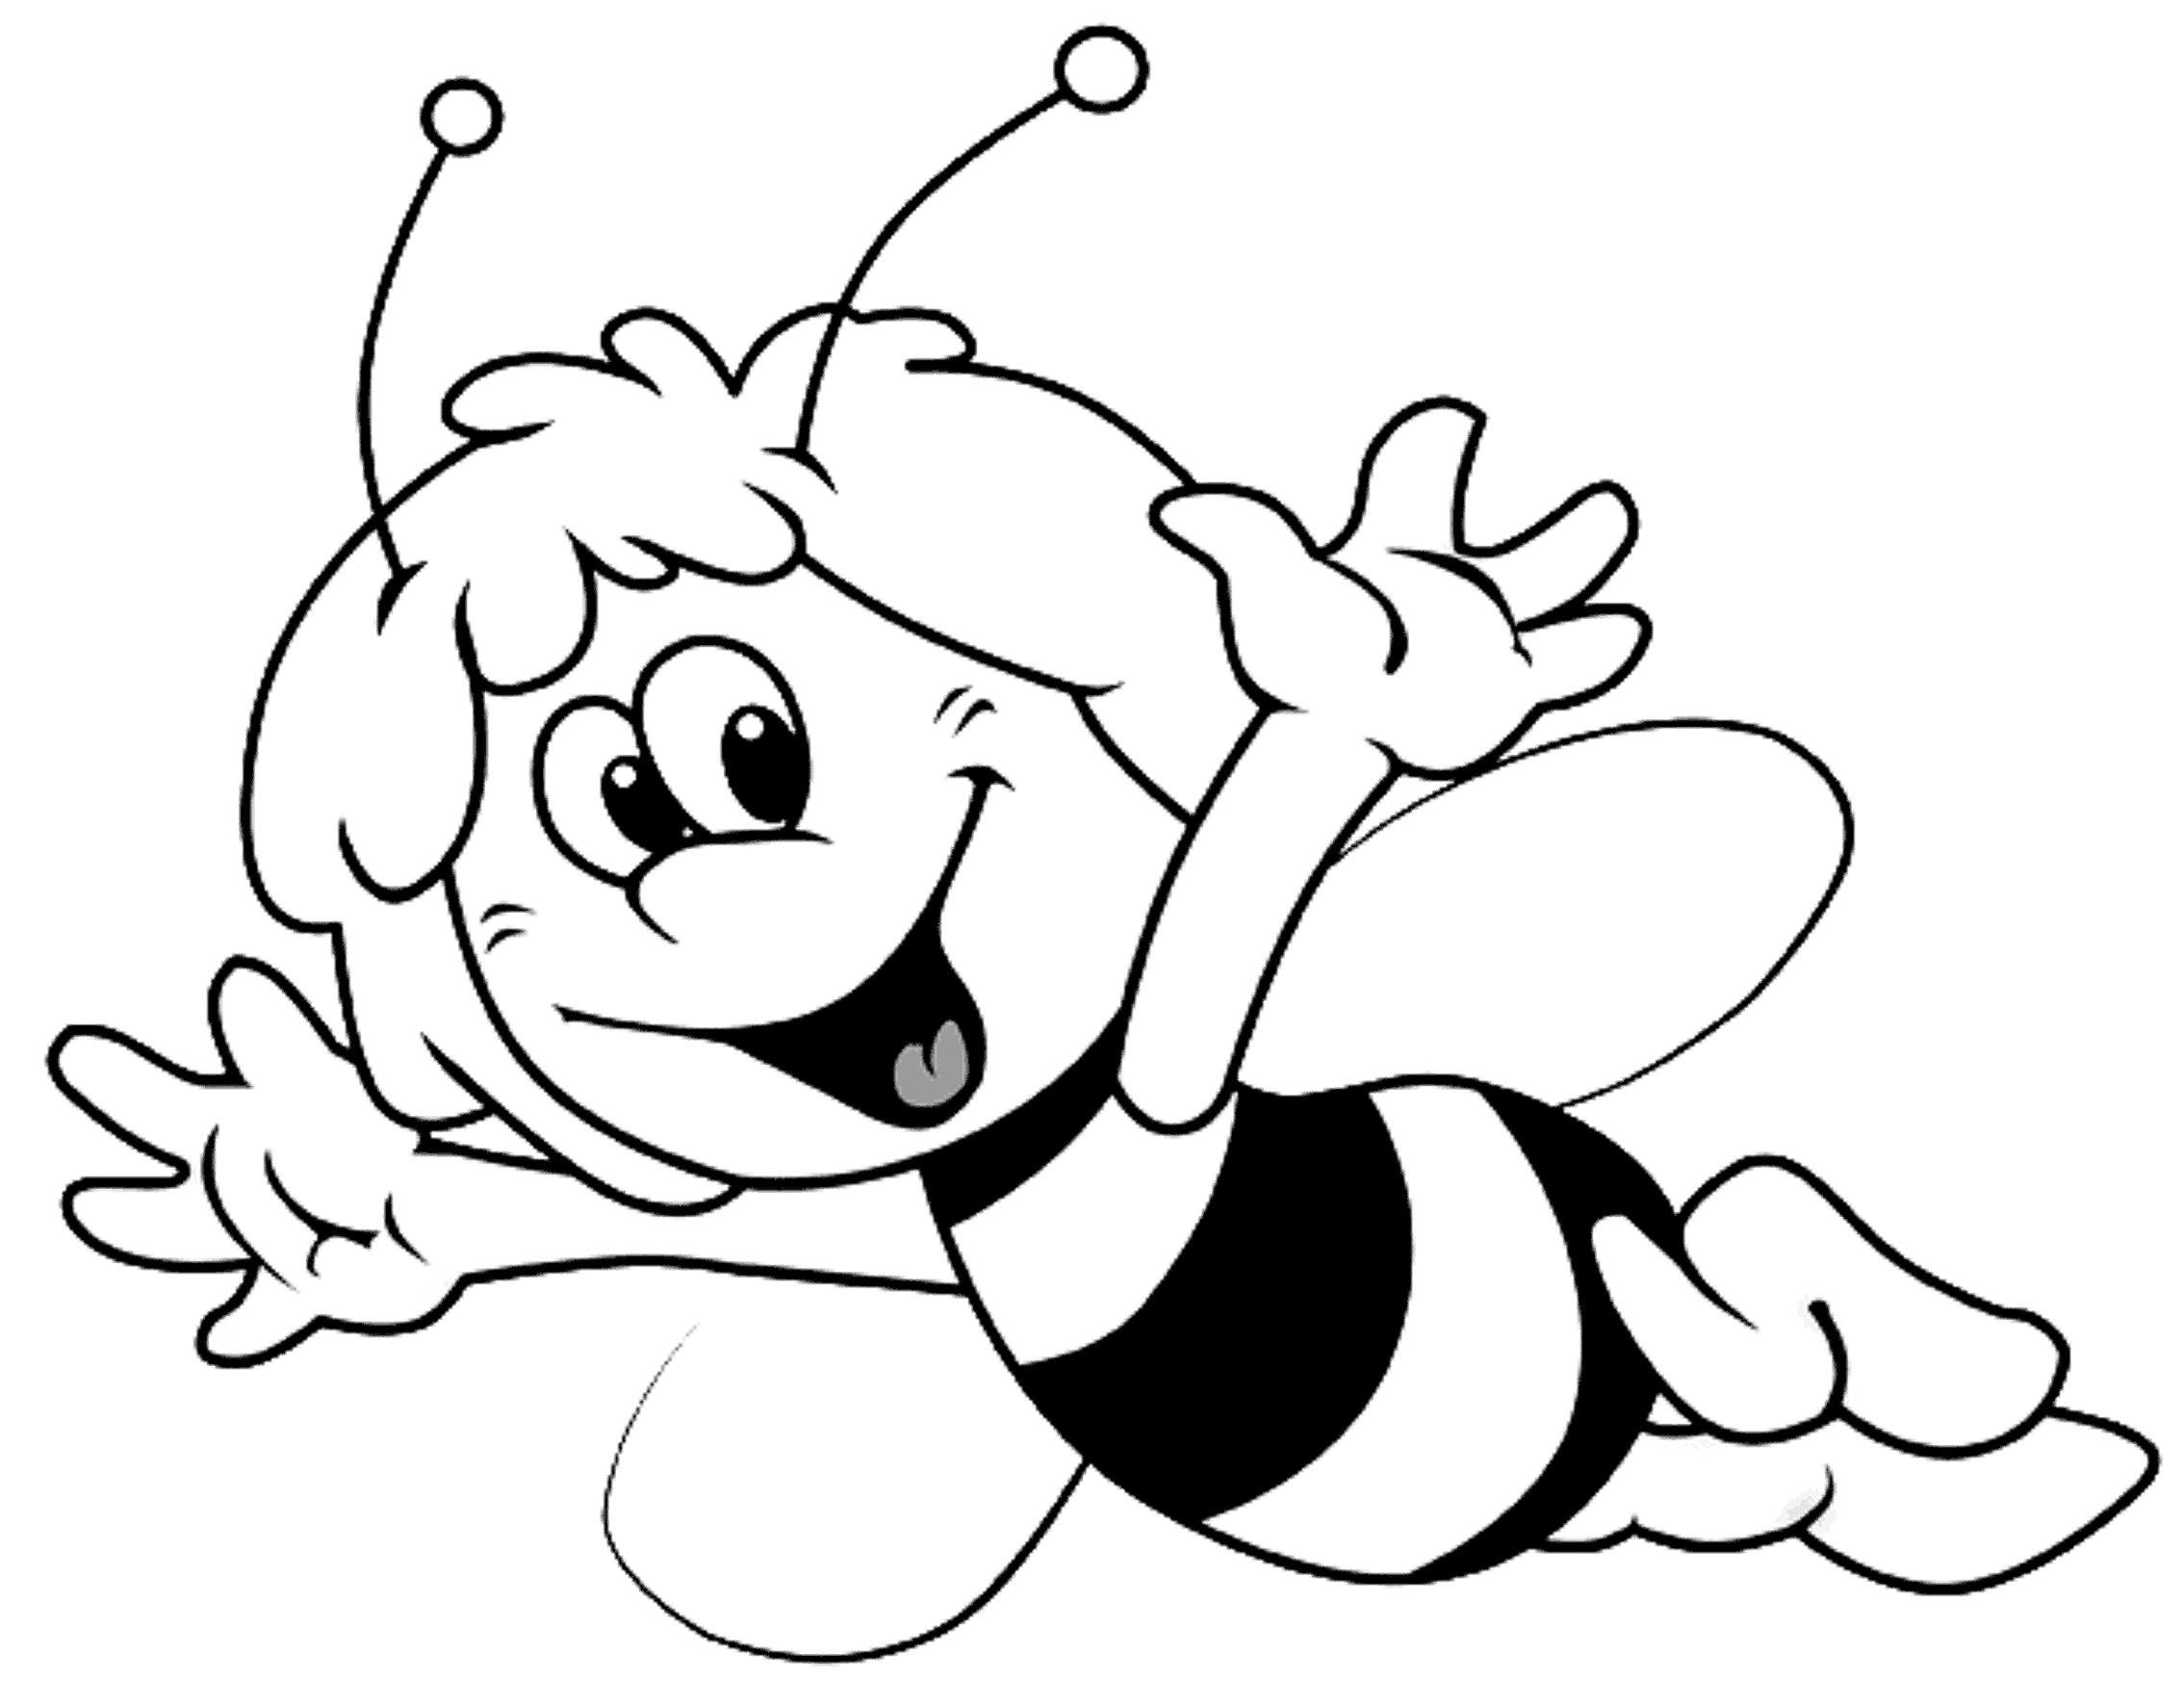 Пчелка раскраска распечатать. Пчелка раскраска. Пчела раскраска. Раскраска пчёлка для детей. Пчелка Майя раскраска.